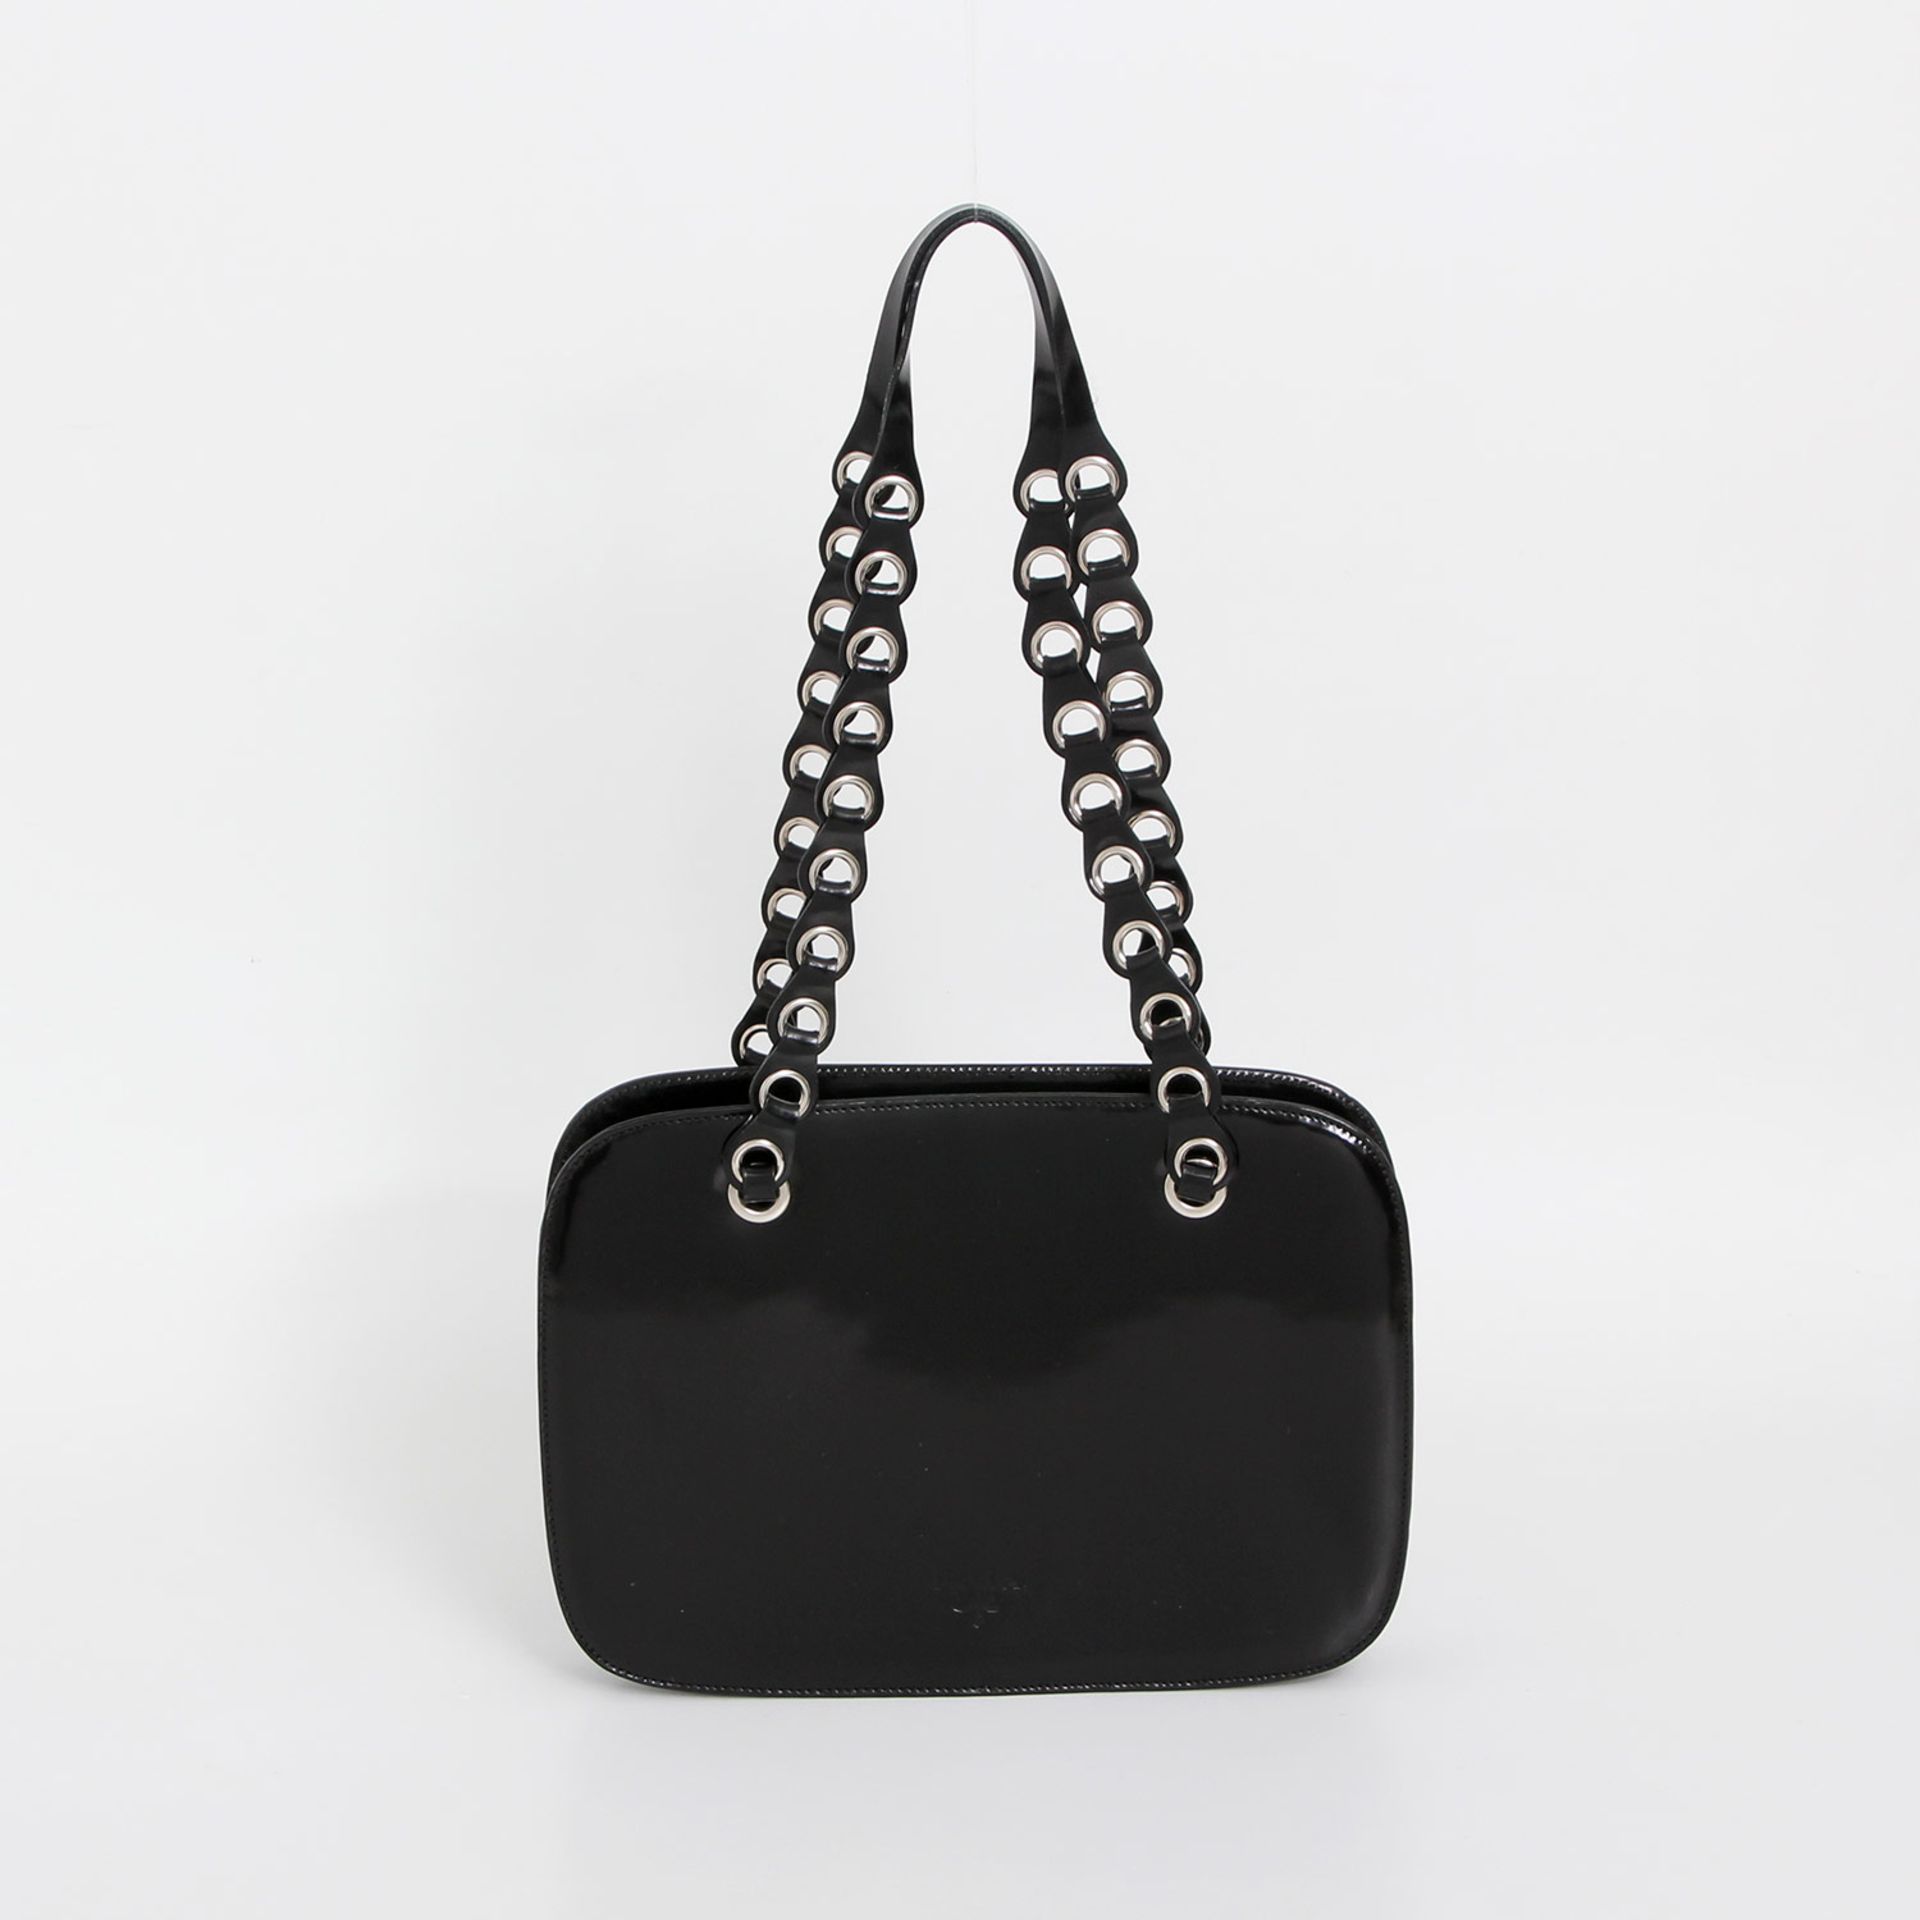 PRADA tolle Handtasche, 26x19x4cm; schwarz, mattglänzend, schlichte abgerundete Rechteckform mit